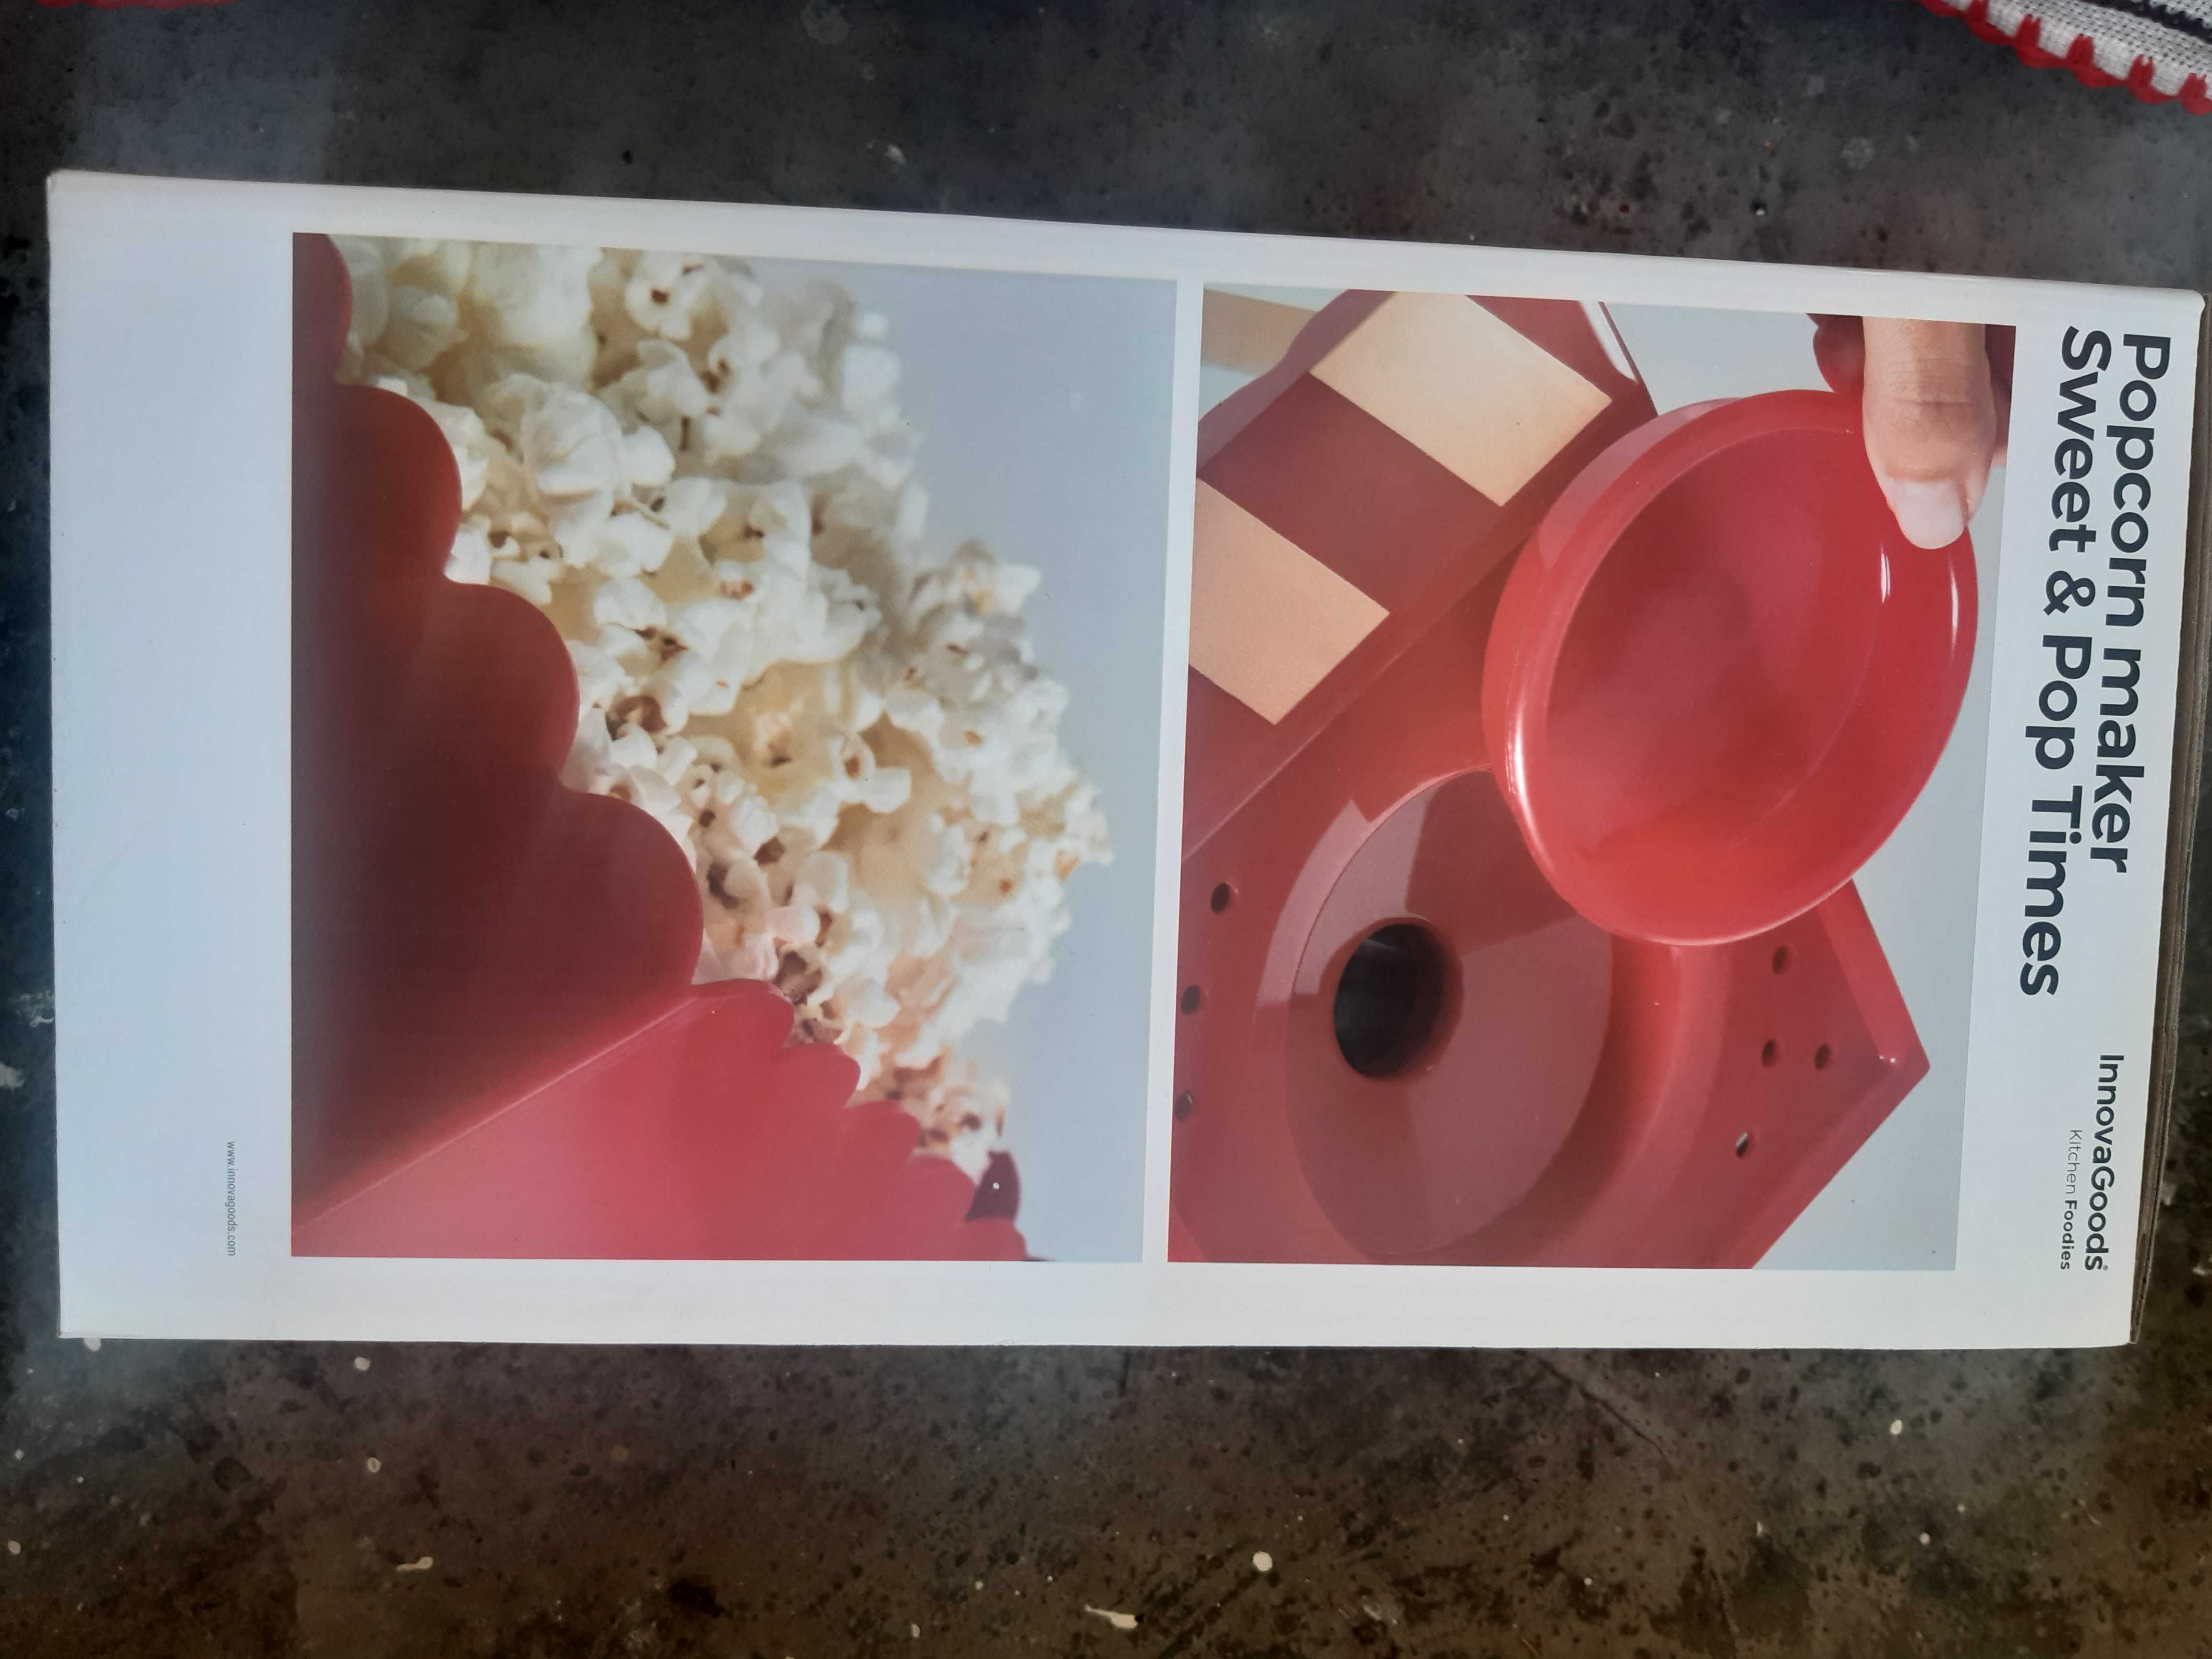 Aparat de facut floricele Popcorn Maker